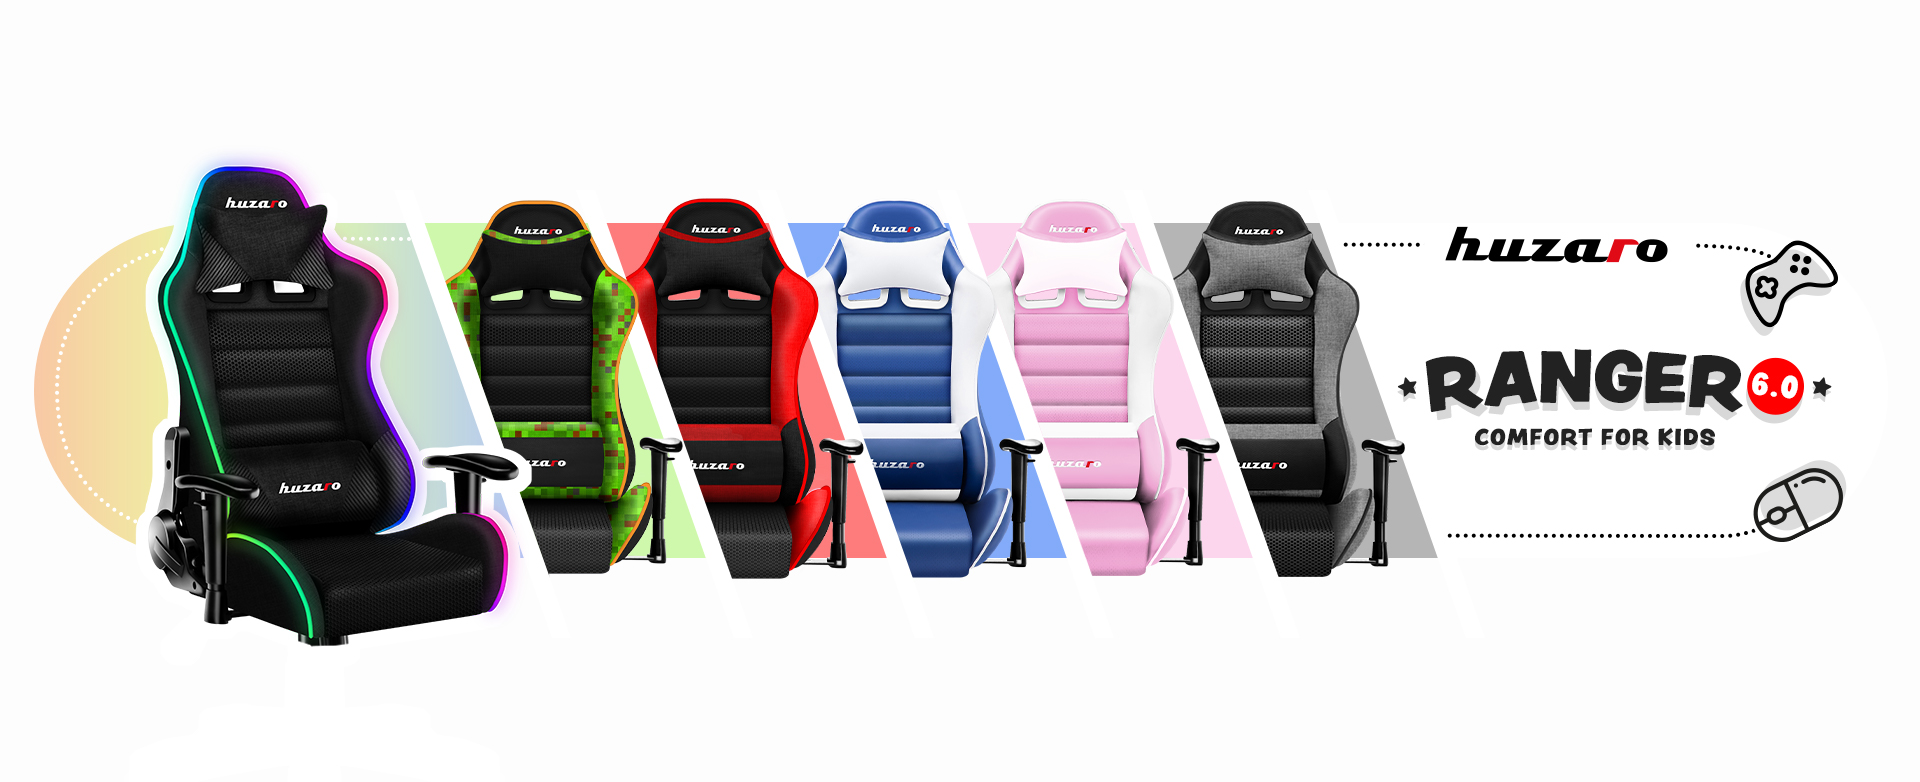 Dostępne kolory fotela Ranger 6.0